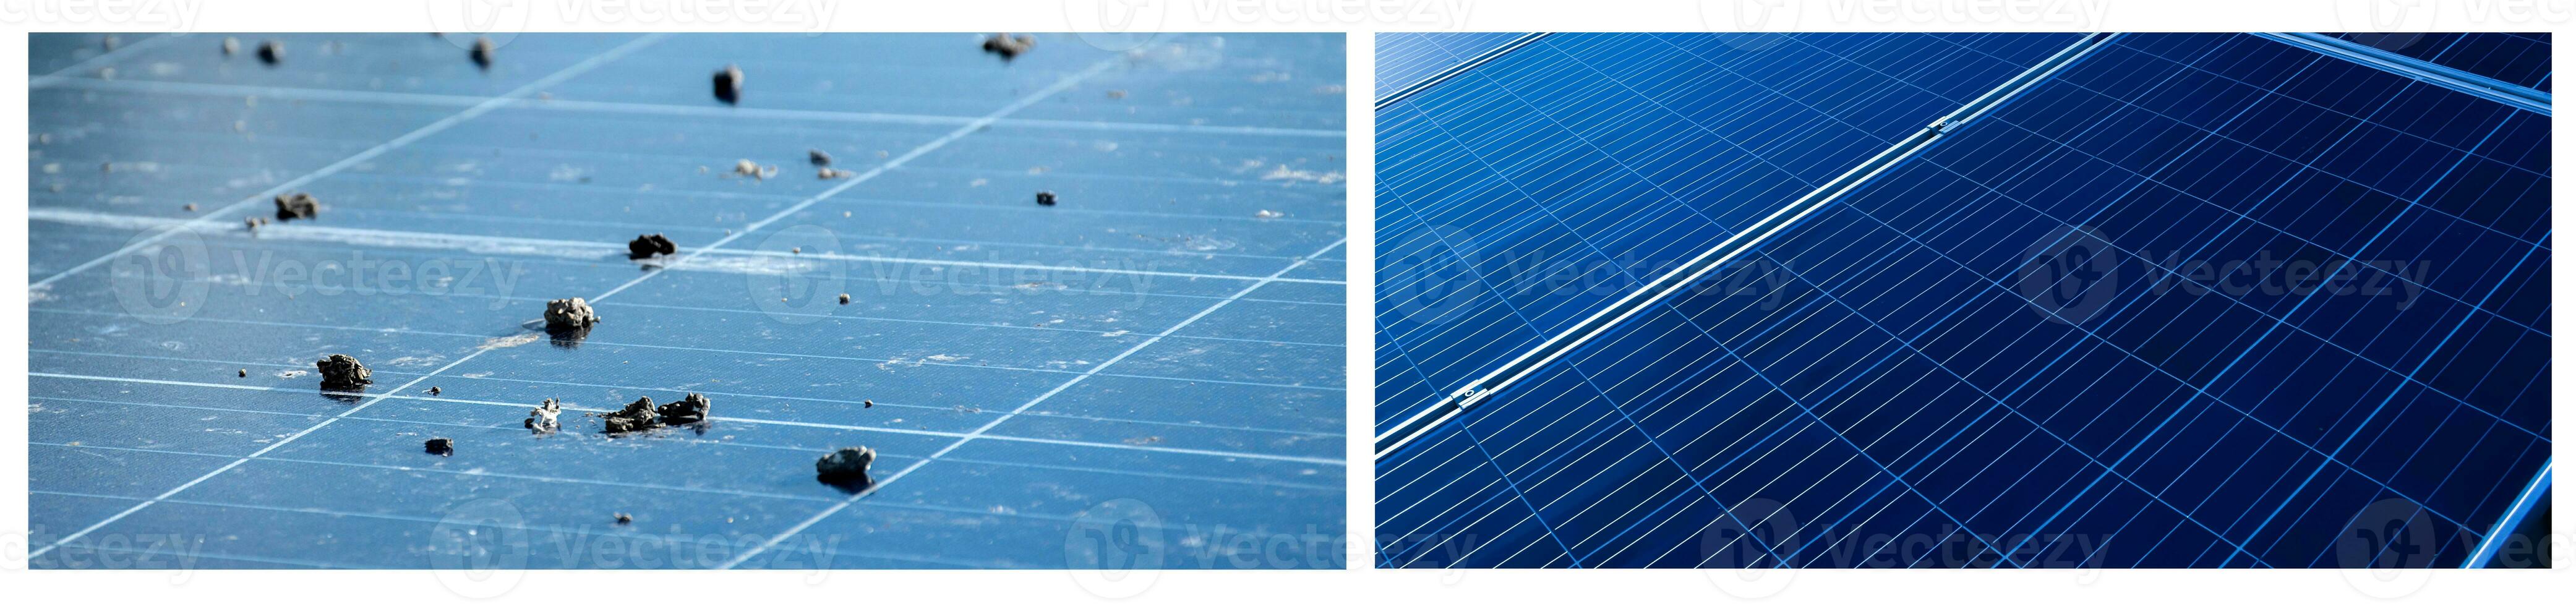 superior superfície do fotovoltaico ou célula solar painéis, sujo painéis e limpar \ limpo painéis depois de lavando, cortada tomada, conceito para lavando e limpeza para a eficiência do trabalhando sistema do solar células. foto